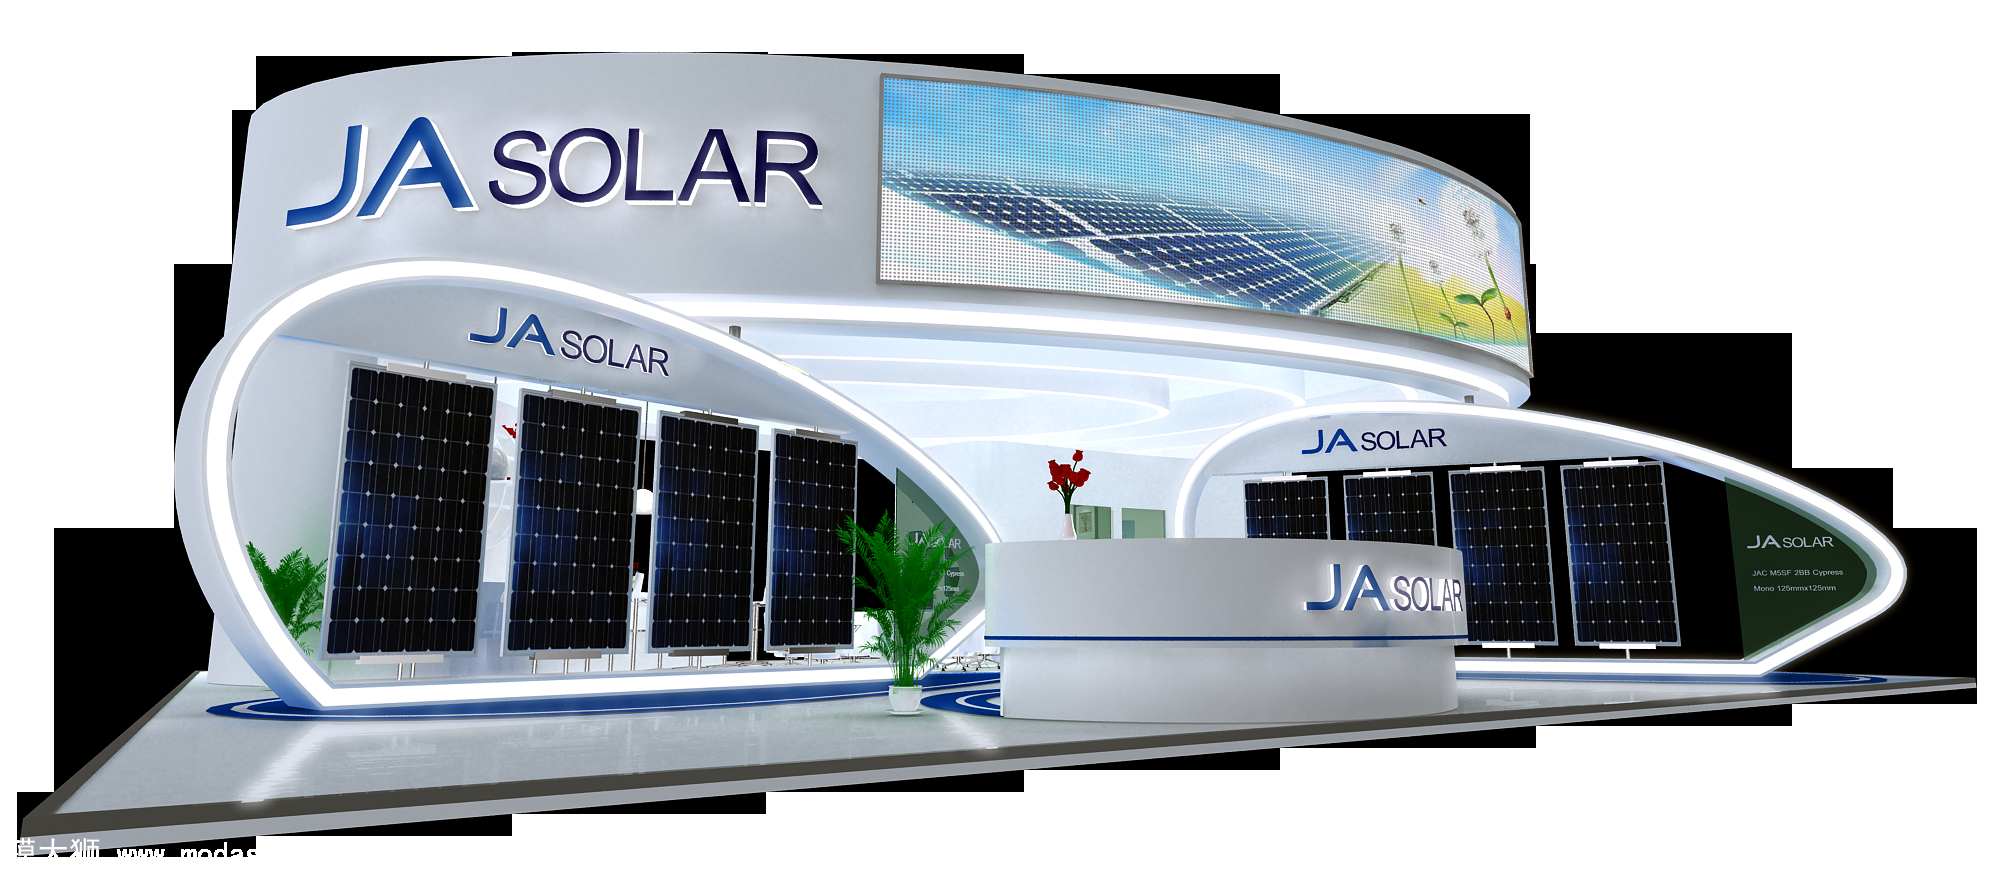 JA solar展台模型